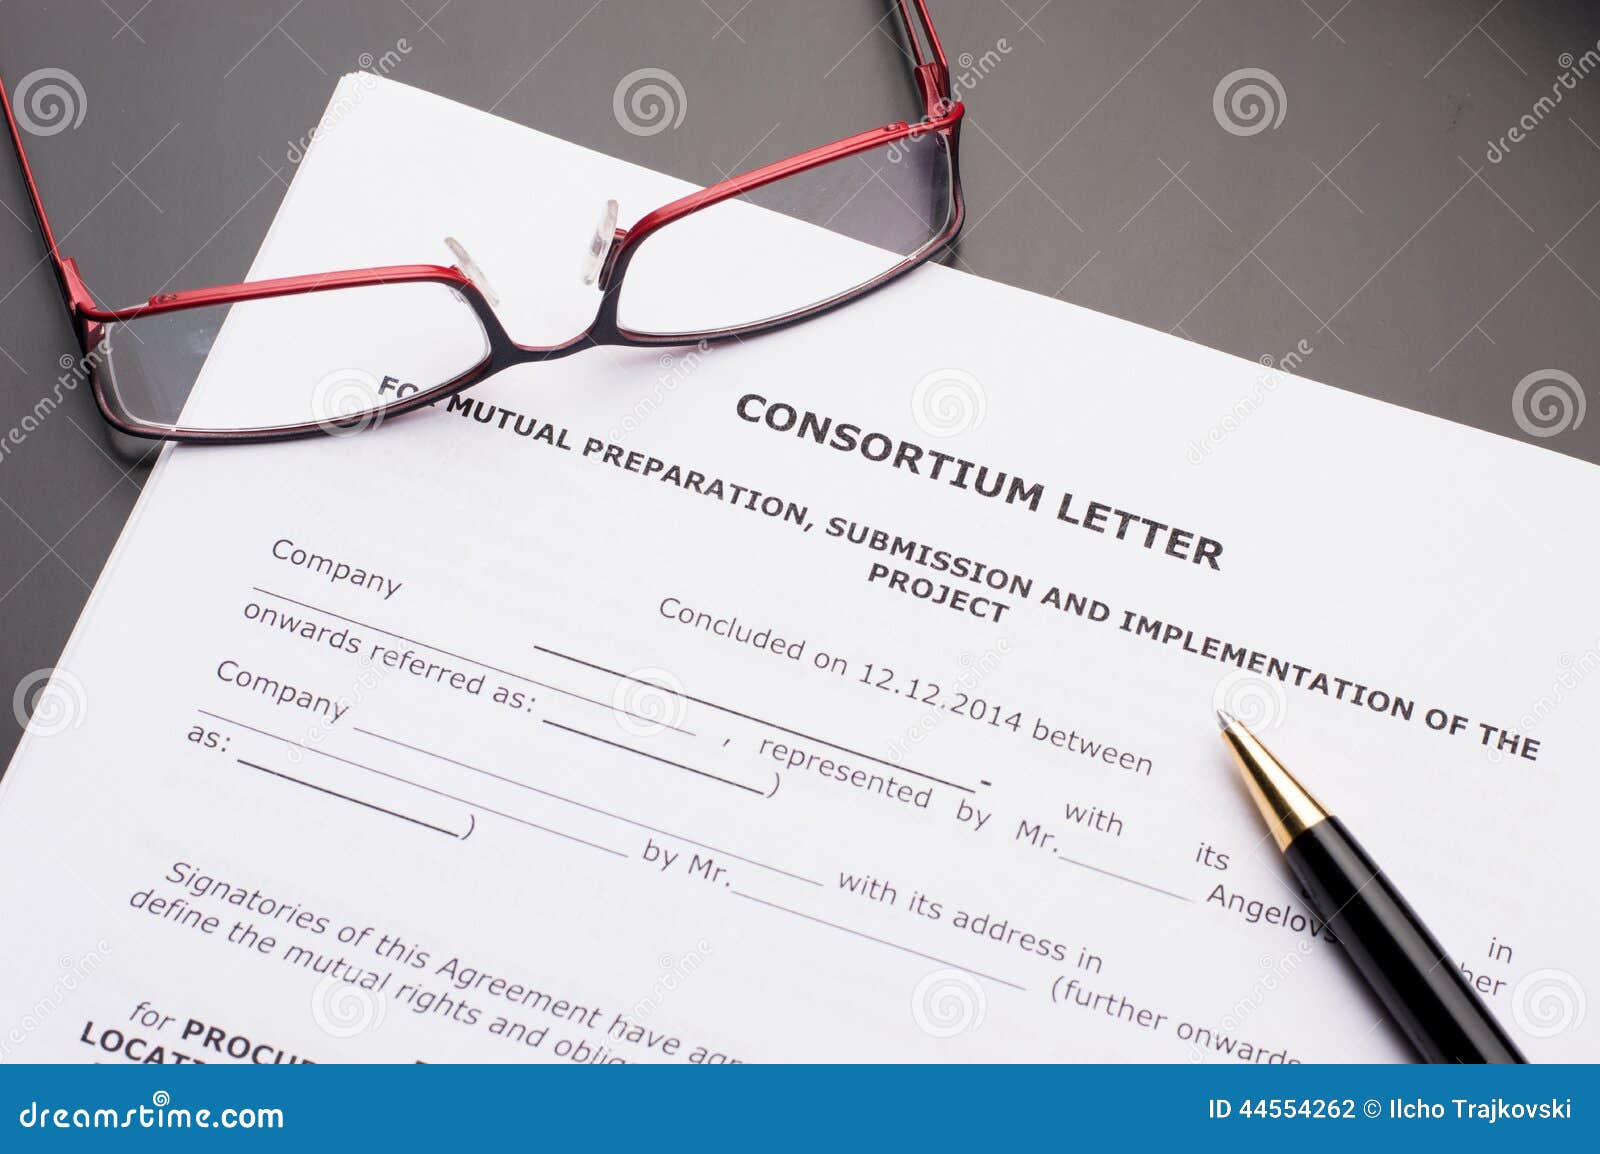 consortium letter